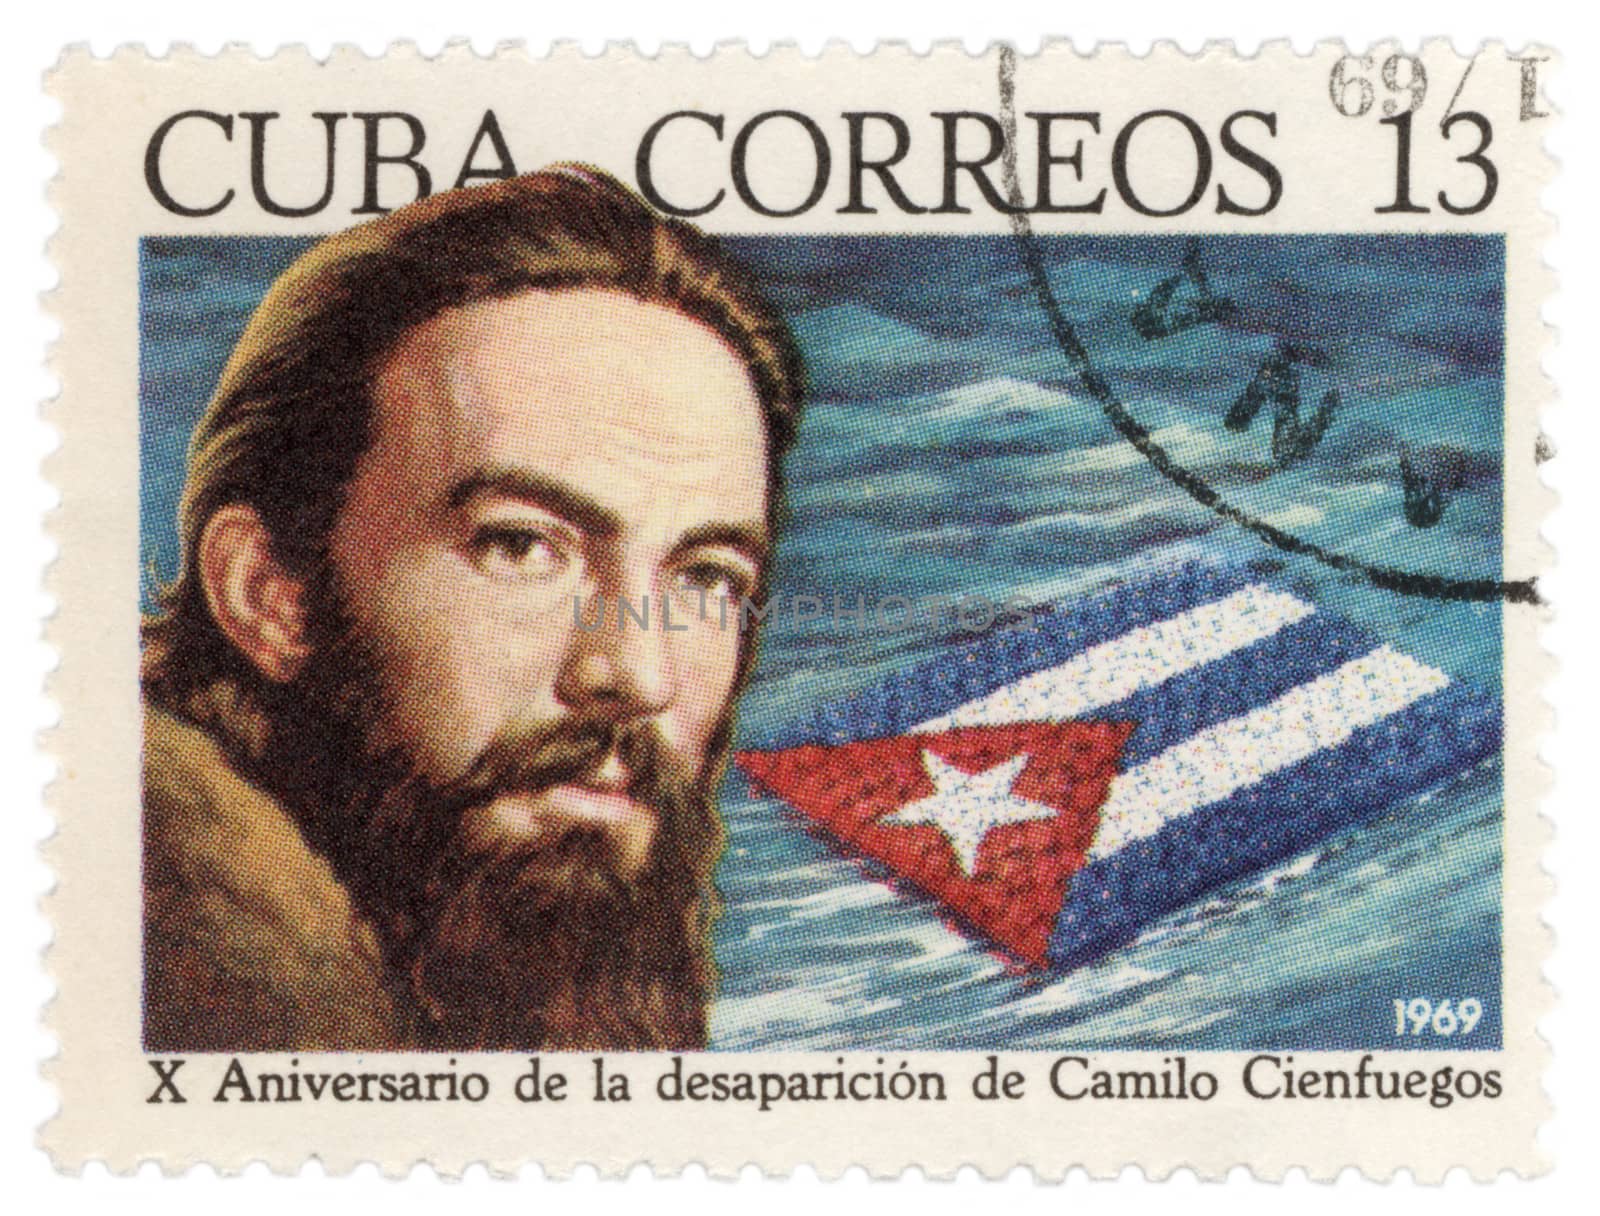 Cuban revolutionary Camilo Cienfuegos by wander